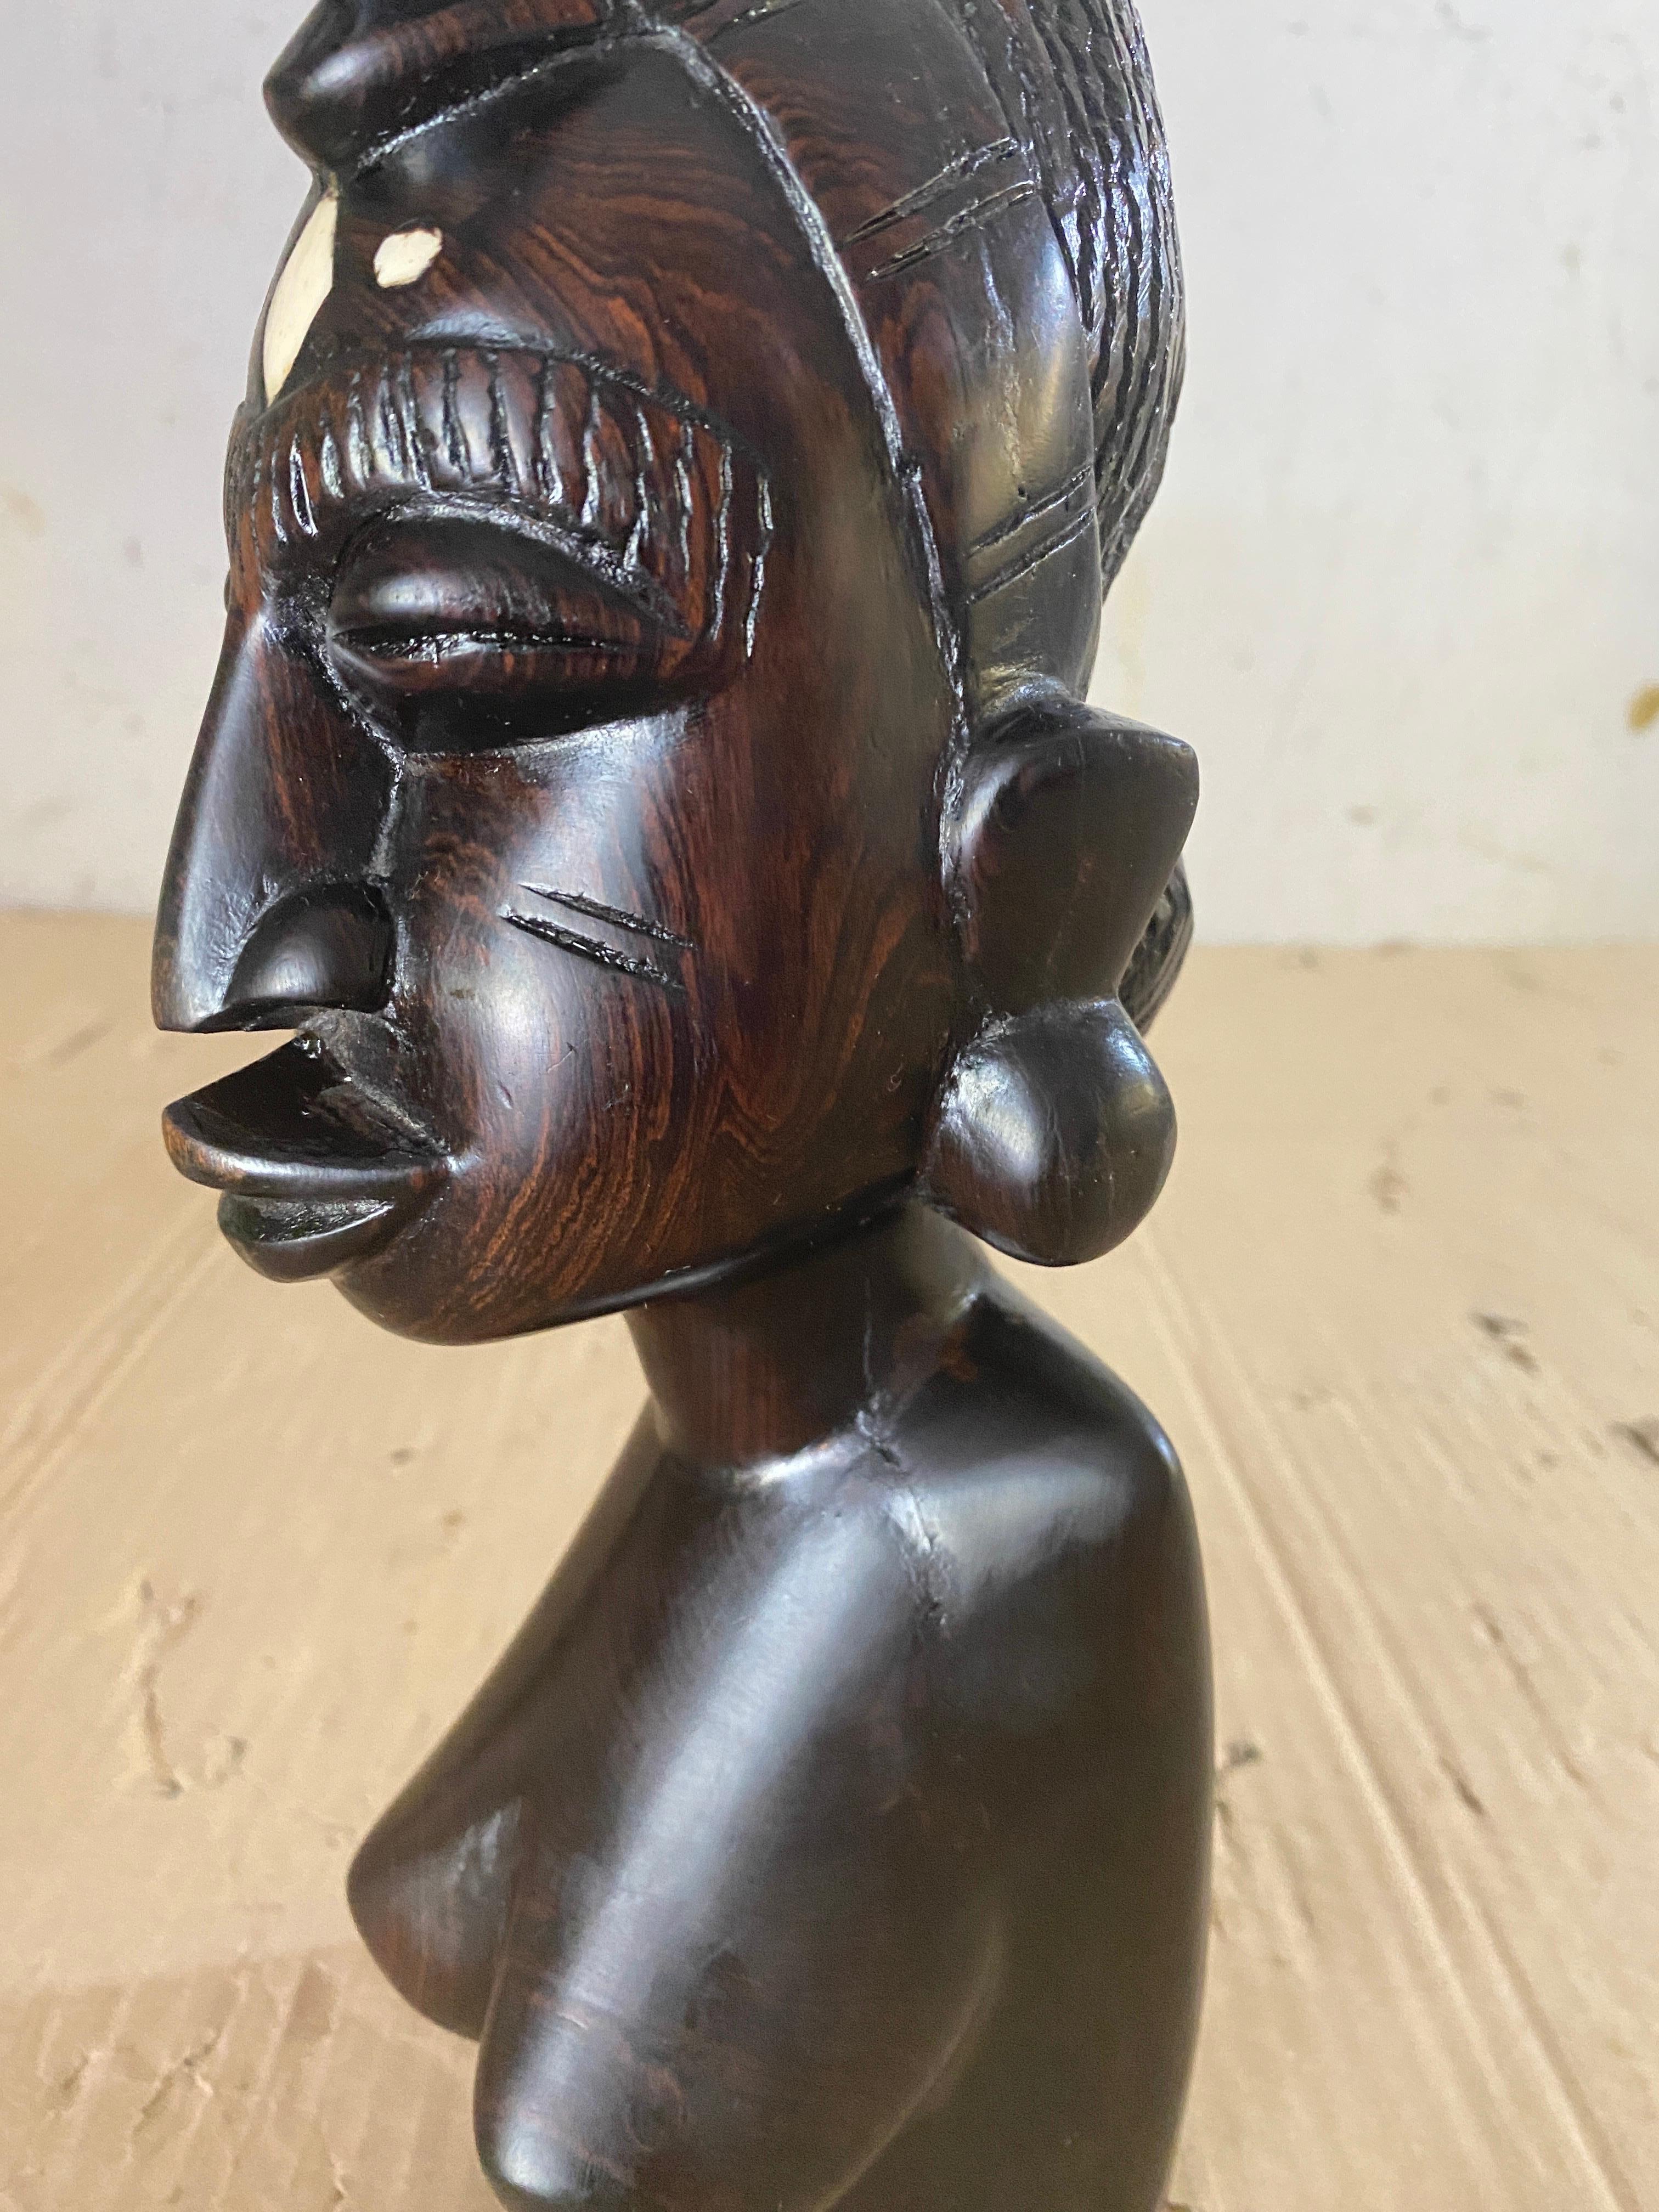 Cette sculpture est un buste de femme, avec sa traditionnelle découpe à l'air. Elle est en bois, de couleur noire, et a été fabriquée en Afrique au 20ème siècle.